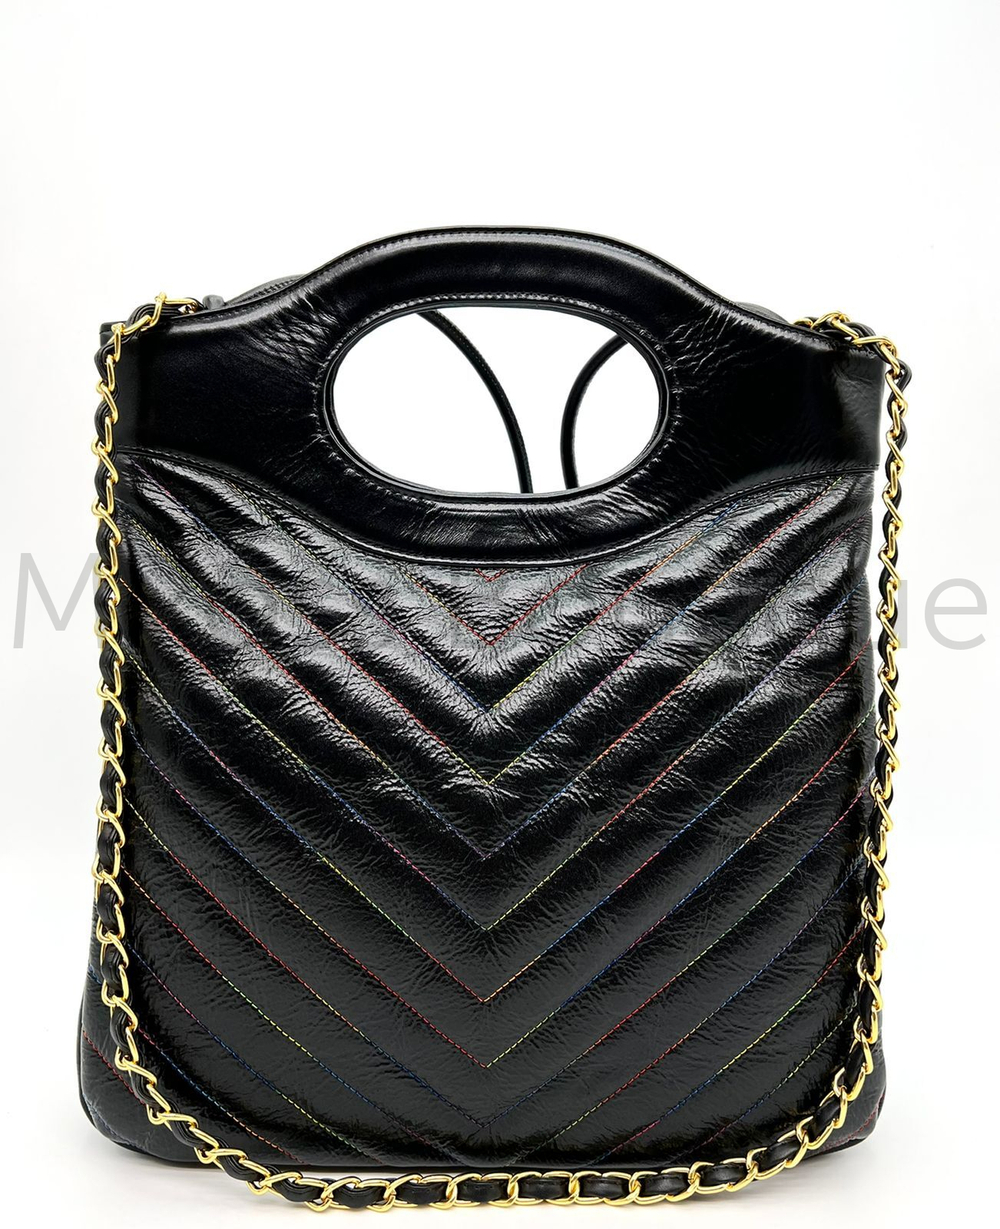 Женская сумка Chanel (Шанель) люкс класса